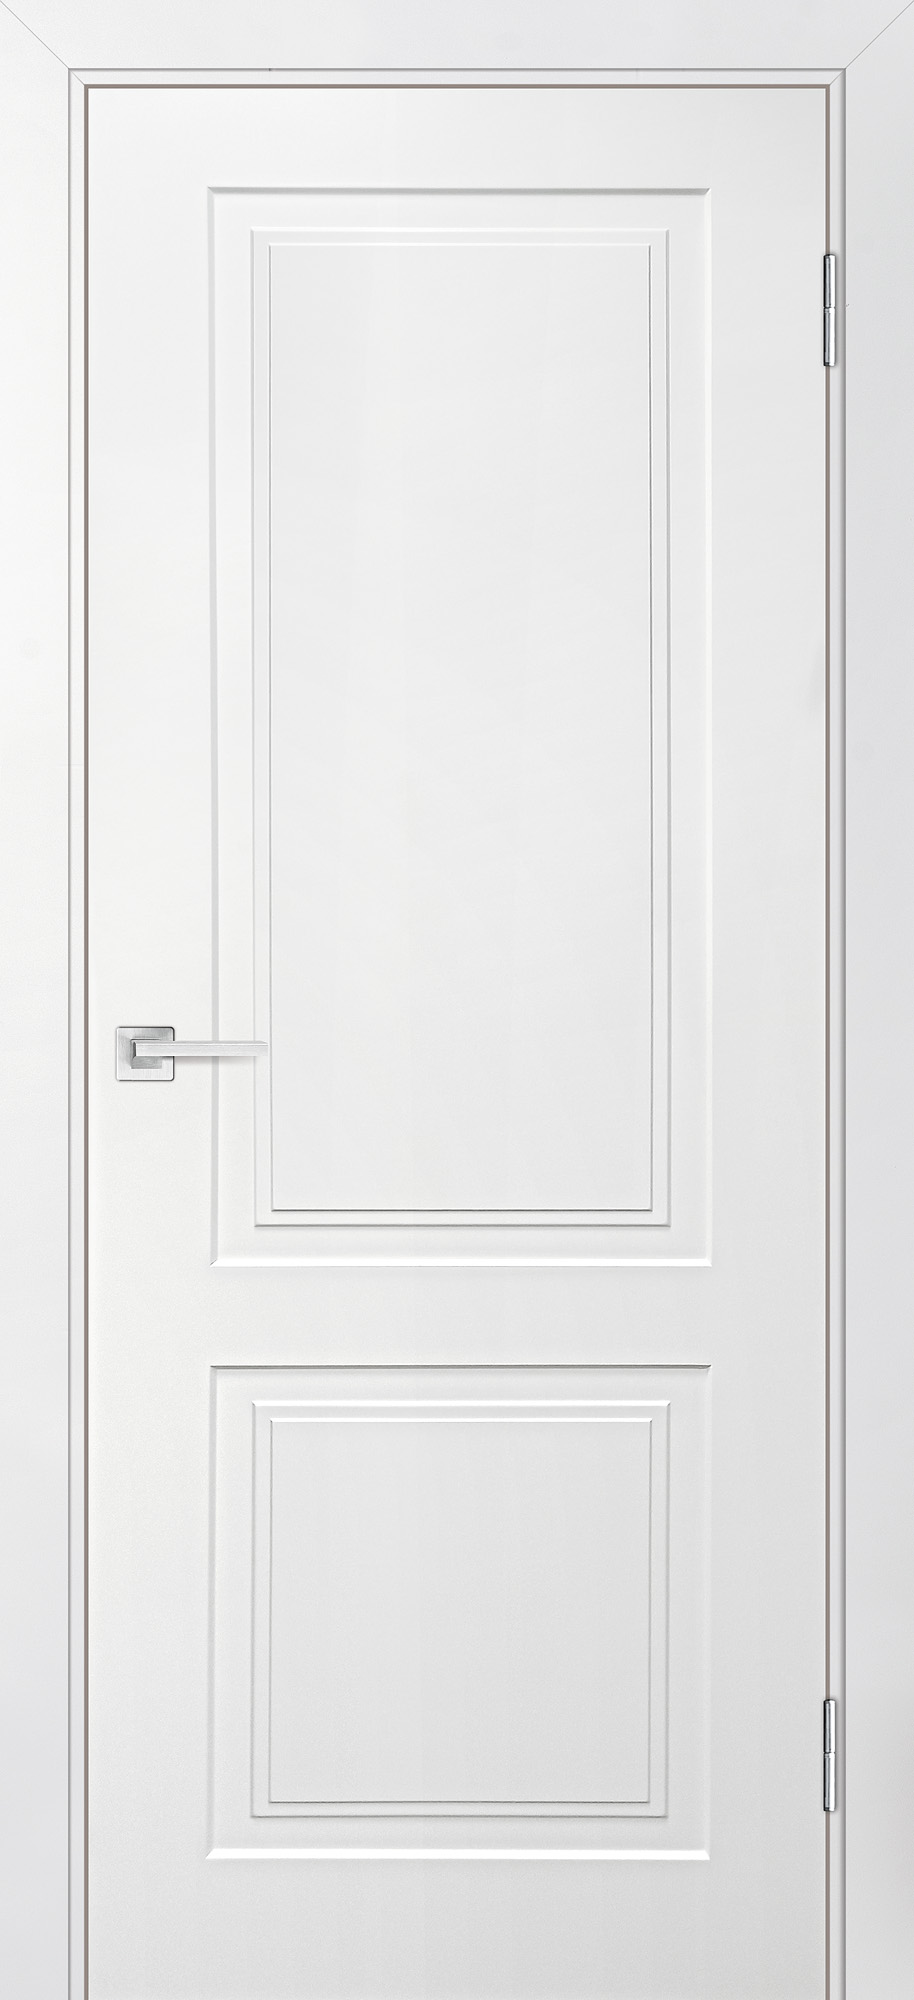 Двери крашеные (Эмаль) ТЕКОНА Смальта-Лайн 04 глухое Белый ral 9003 размер 200 х 90 см. артикул F0000083714